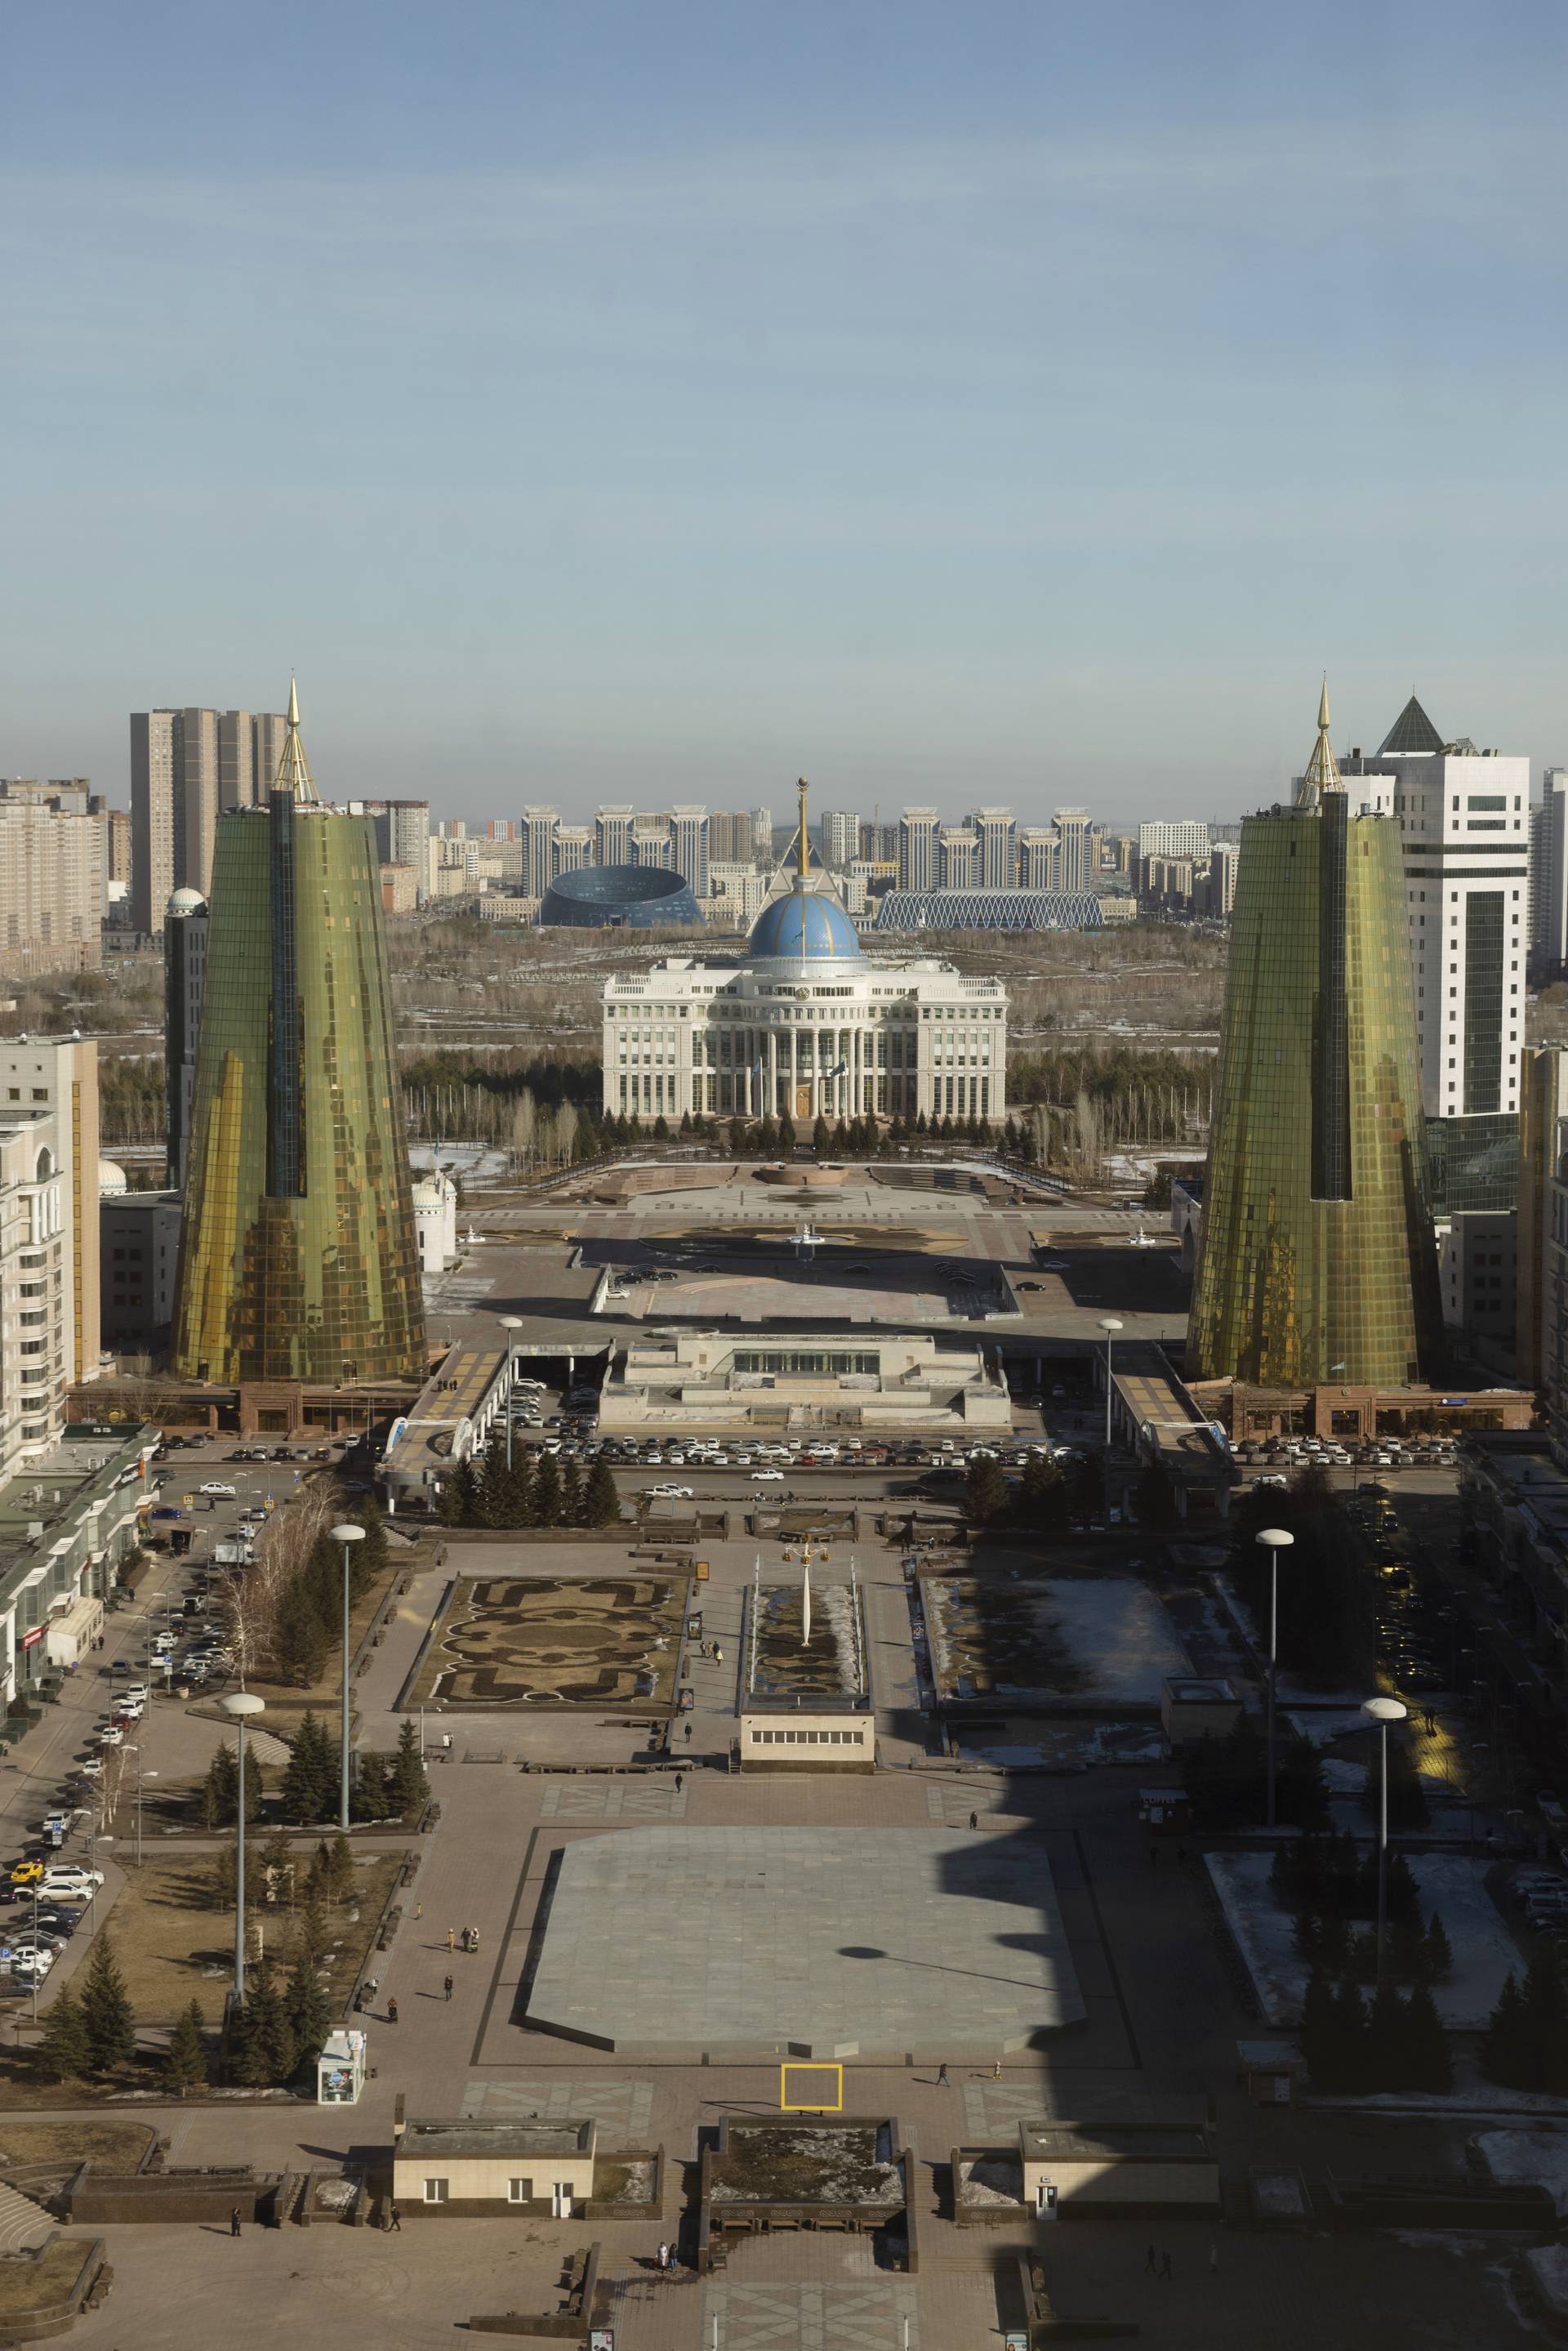 Aukioiden jono johtaa Kazakstanin presidentin palatsiin.